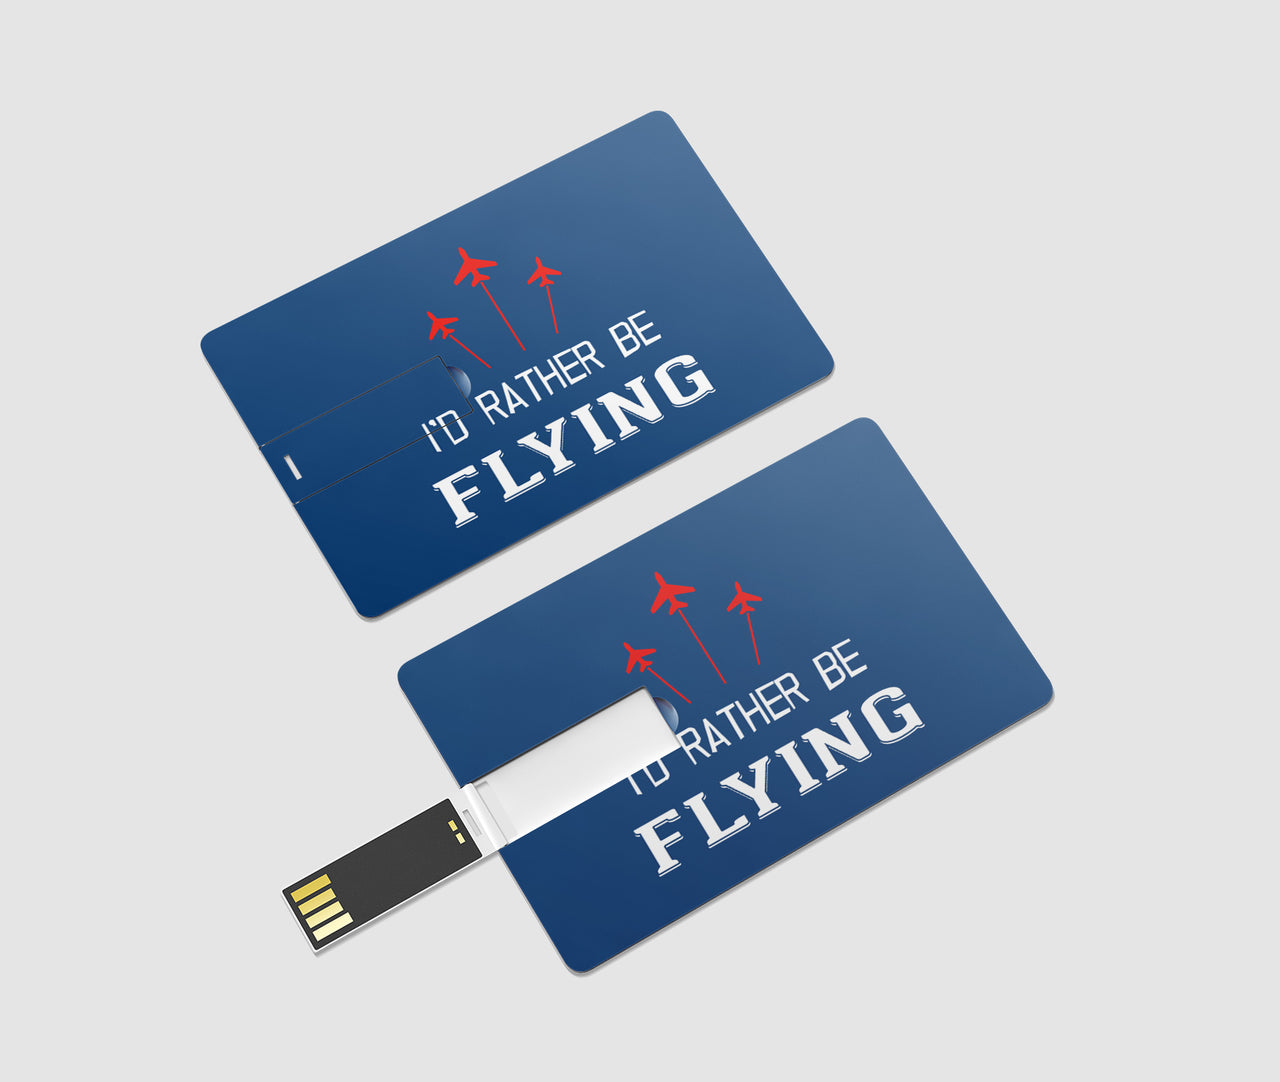 I'D Rather Be Flying Designed USB Cards